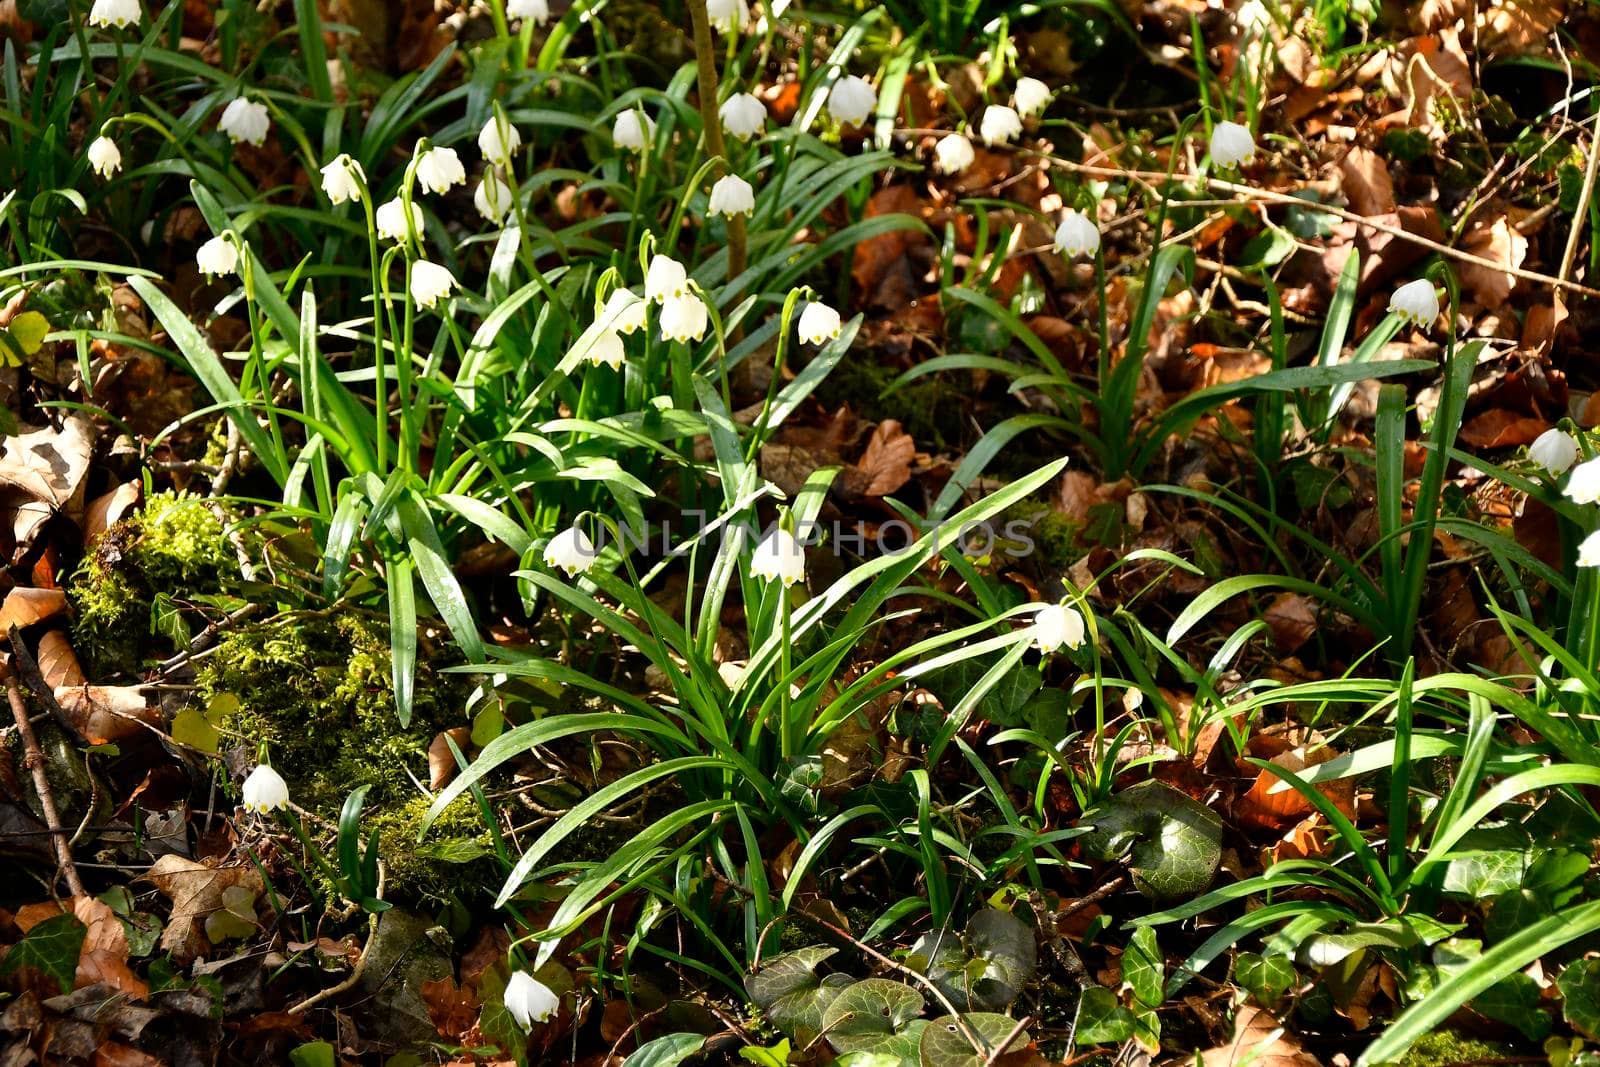 Snowflake, early spring flower in the Autal, Bad Ueberkingen, Germany by Jochen